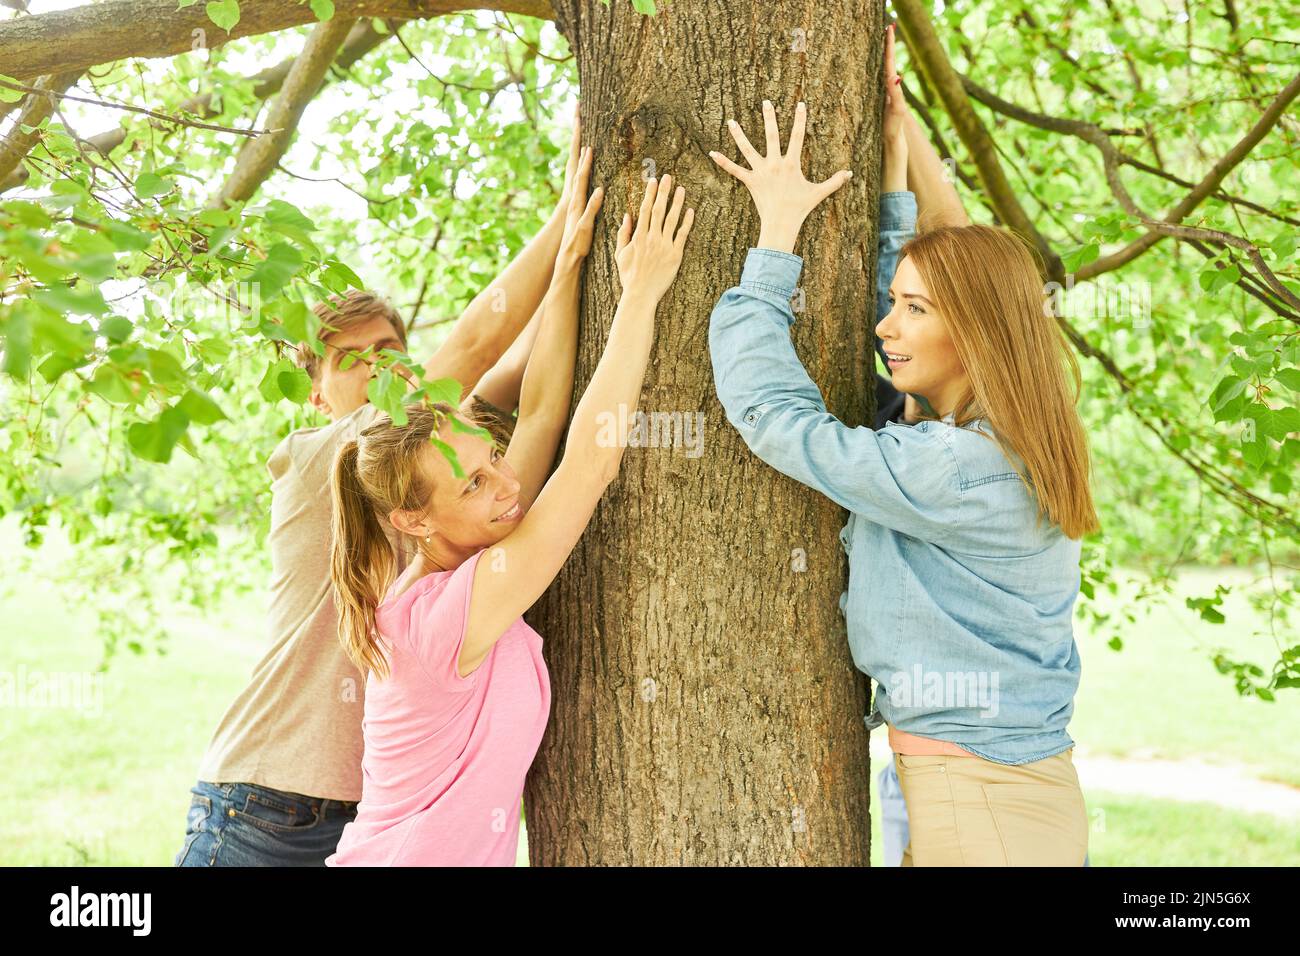 Los jóvenes tocan un árbol y sienten y sienten la relajación como una desaceleración Foto de stock